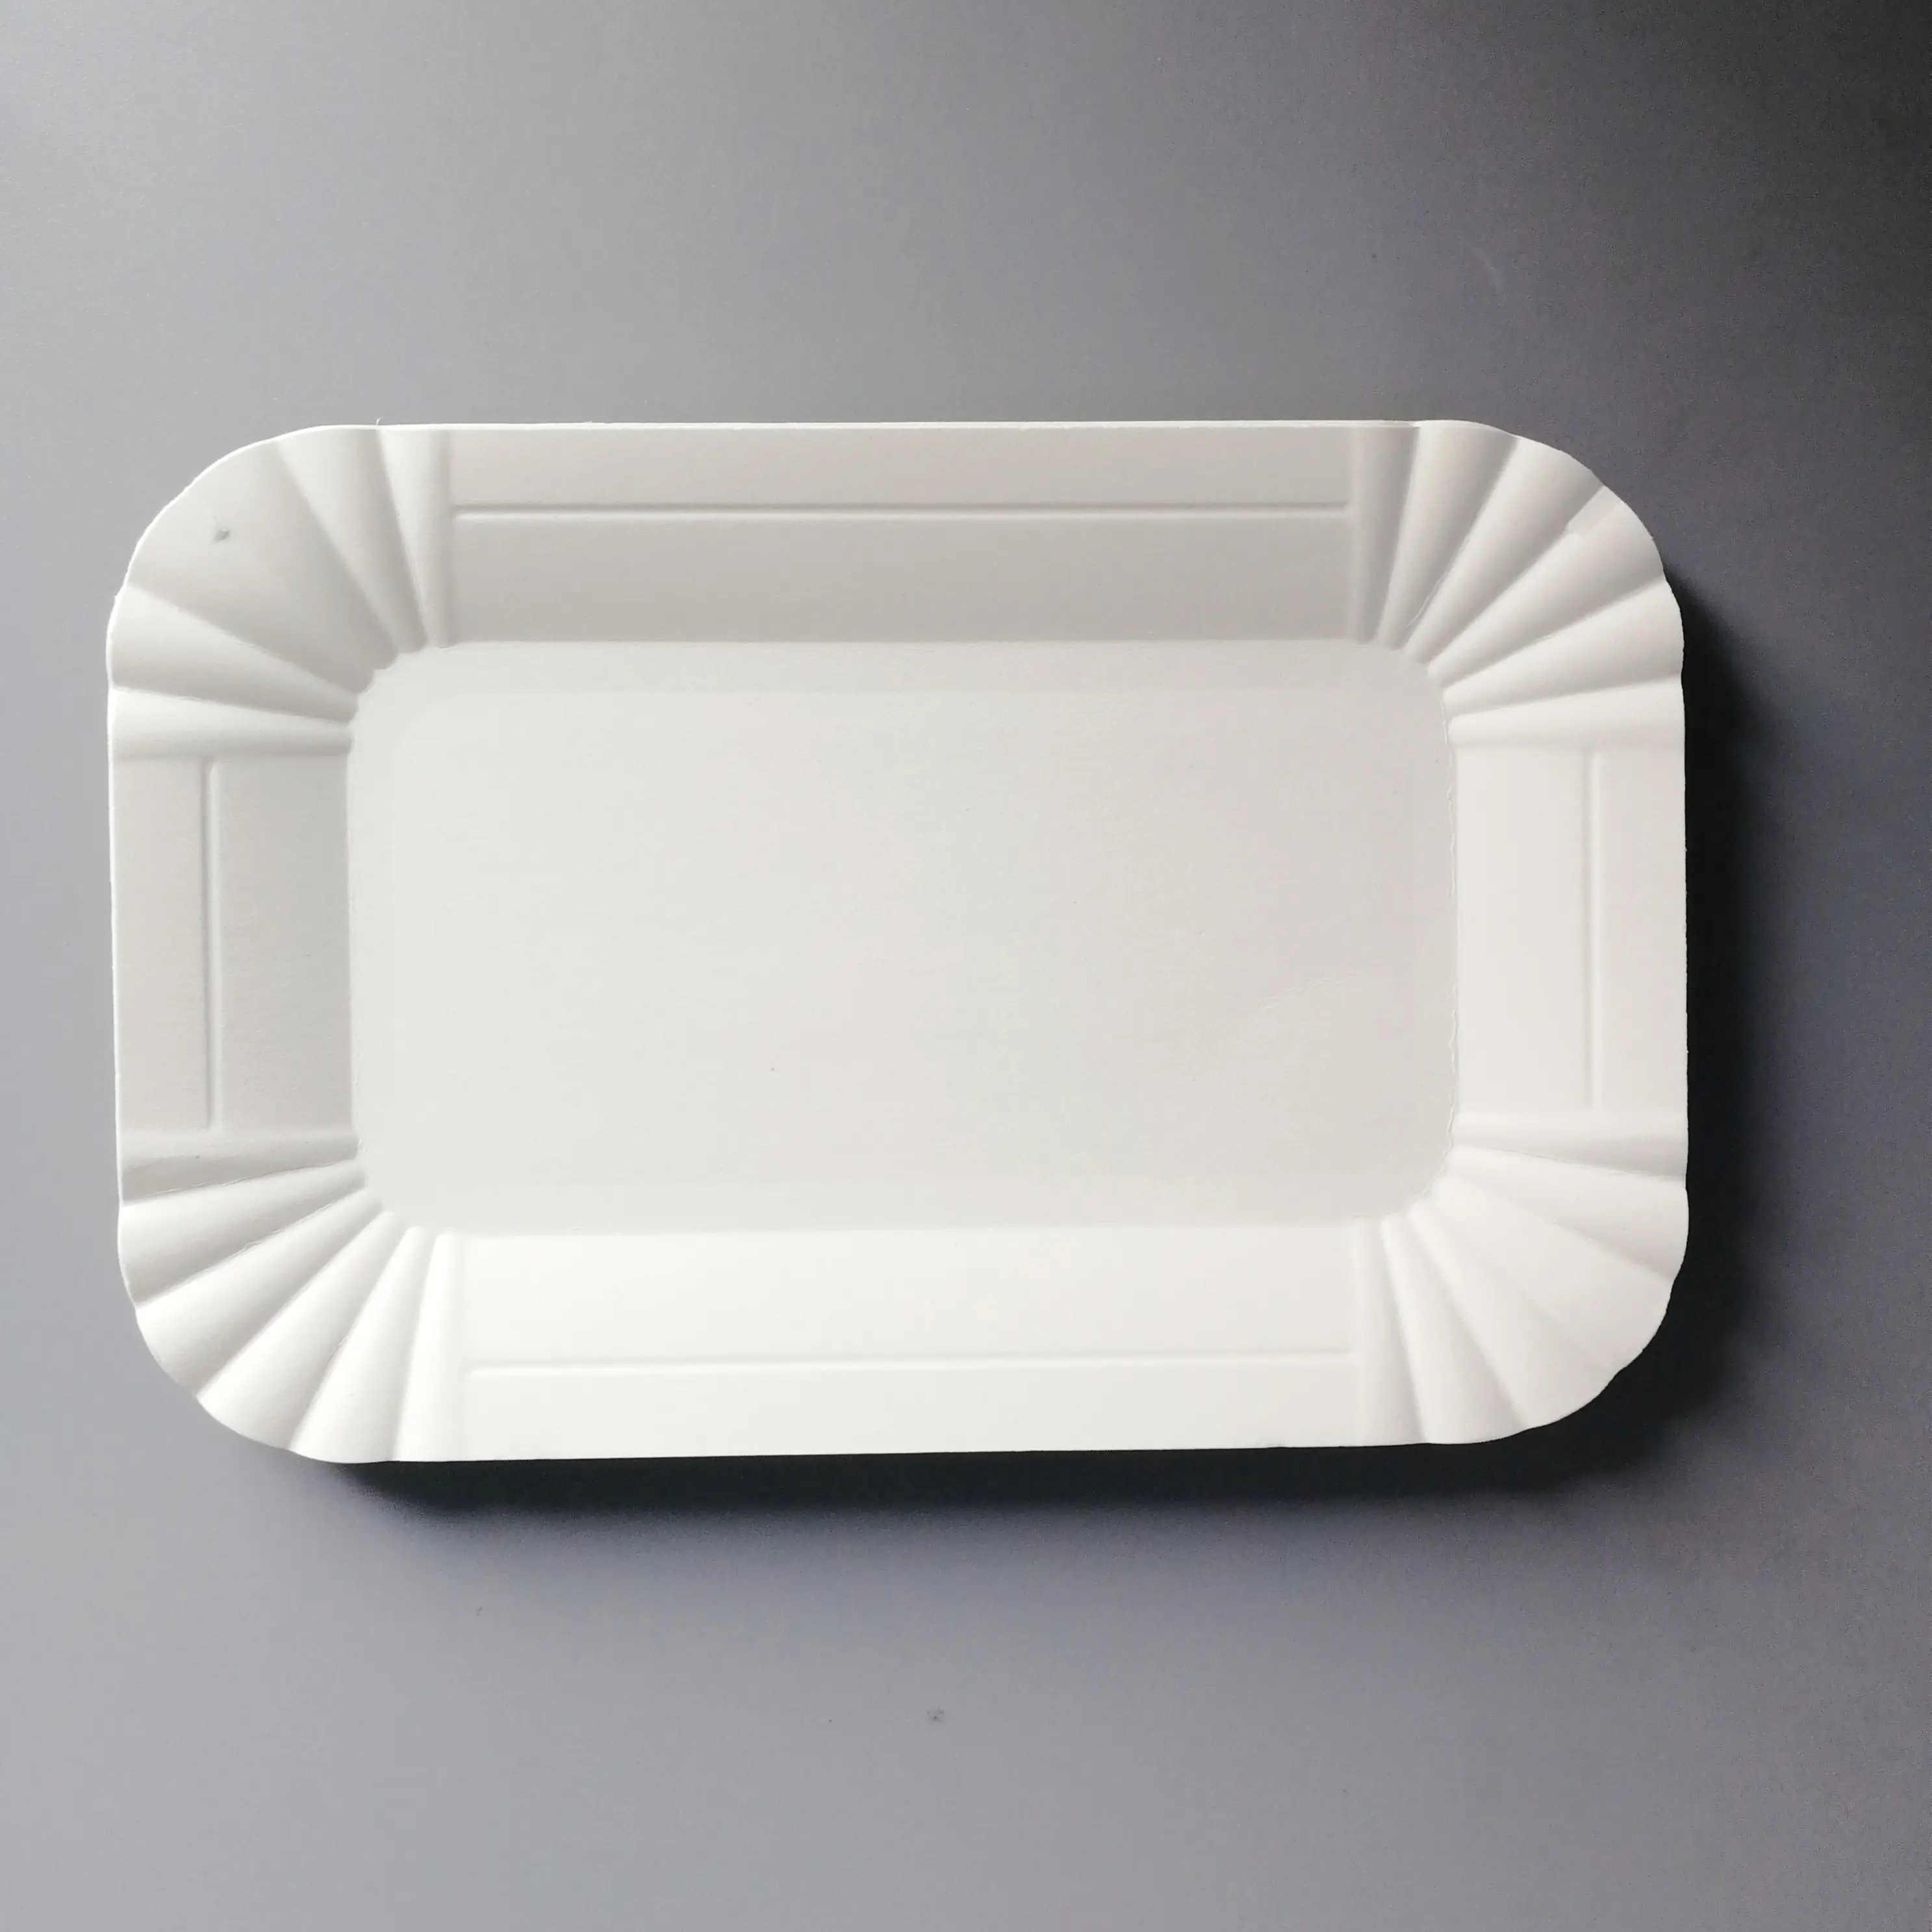 Placas de papel rectangulares de lujo, nuevas y de alta calidad, diseña tus platos de papel para fiesta